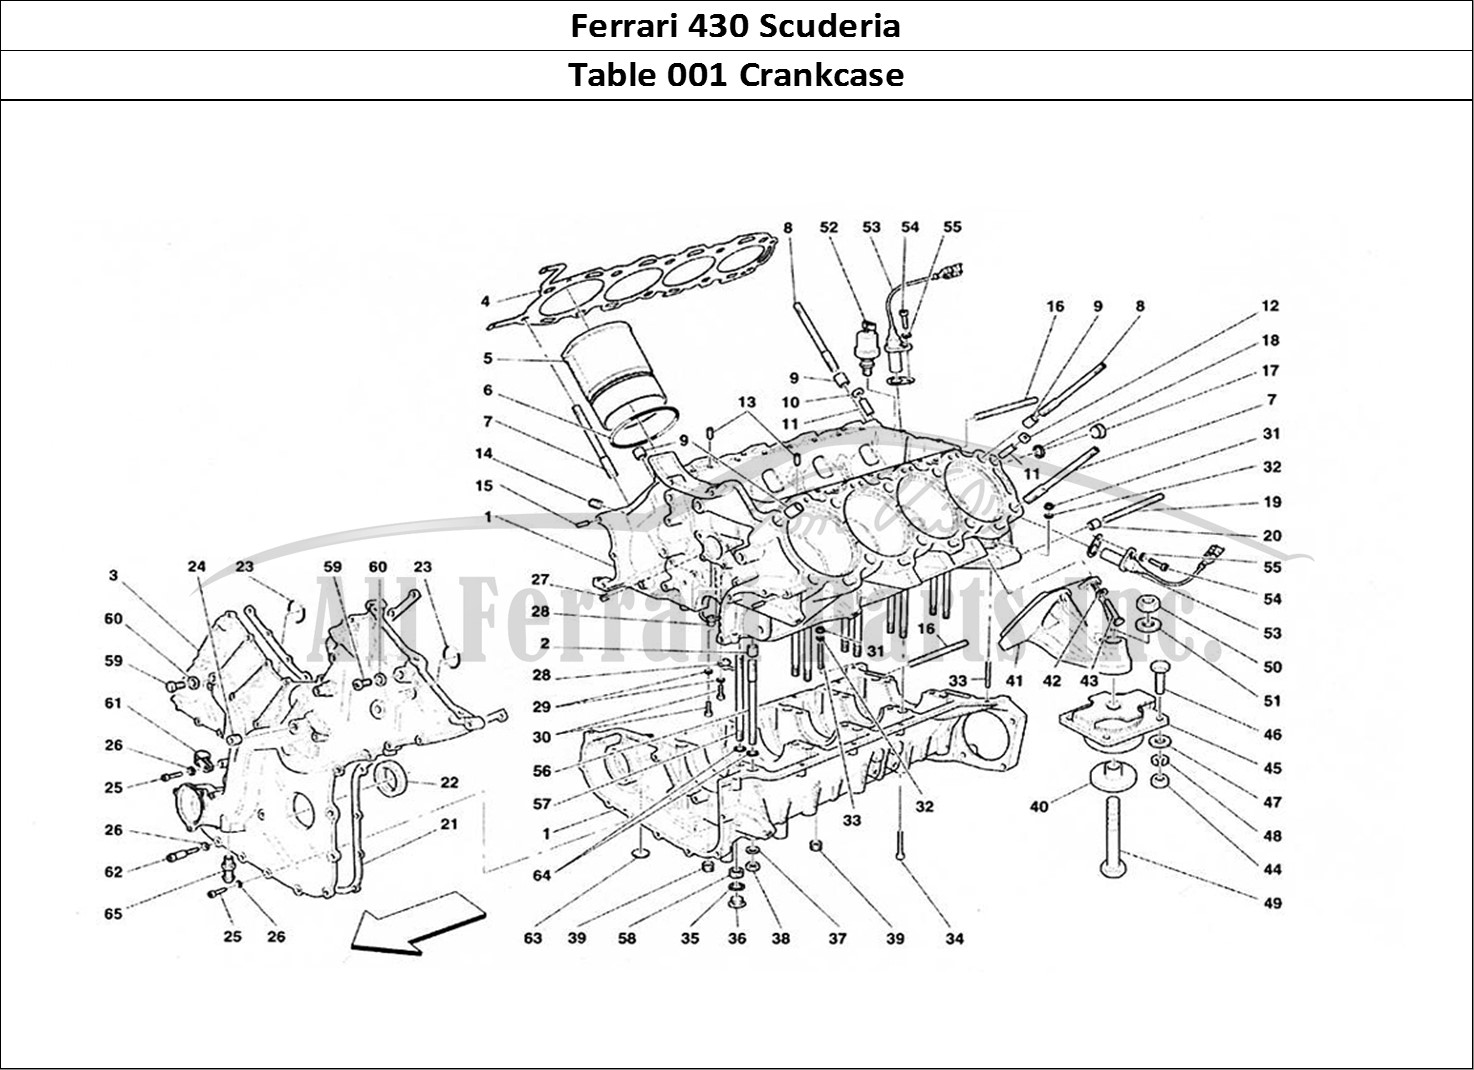 Ferrari Parts Ferrari 430 Scuderia Page 001 Crankcase